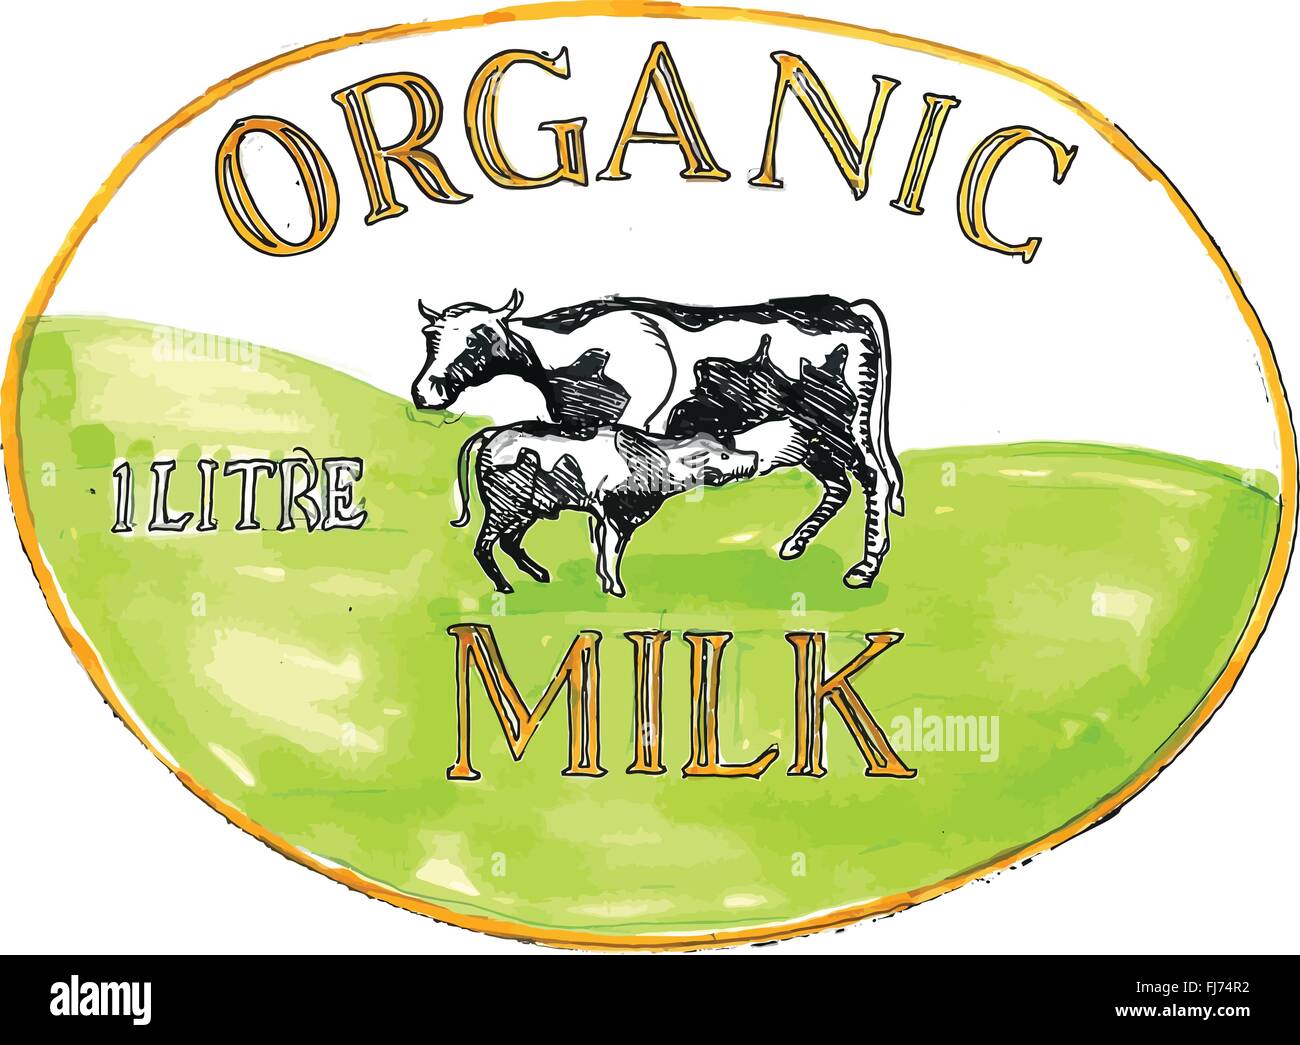 Style croquis dessin illustration d'une étiquette de lait biologique montrant une vache avec son veau suckling situé à l''intérieur de la forme ovale avec 1 litre de lait biologique mots'.' Illustration de Vecteur